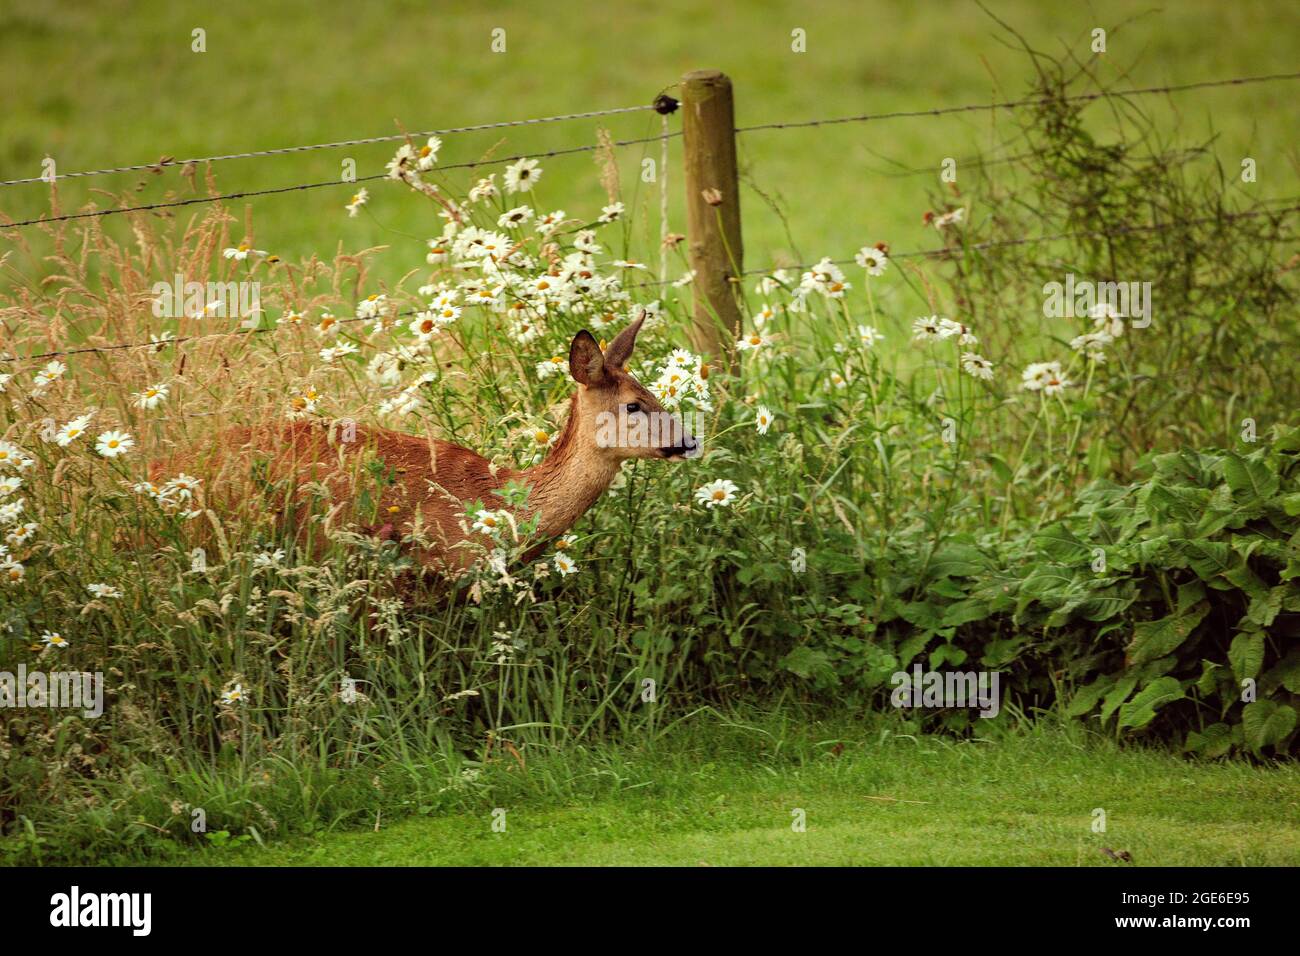 Niederlande, Õs-Graveland, Landgut Hilverbeek. Rehe, Weibchen, Eintritt in den Garten. Stockfoto